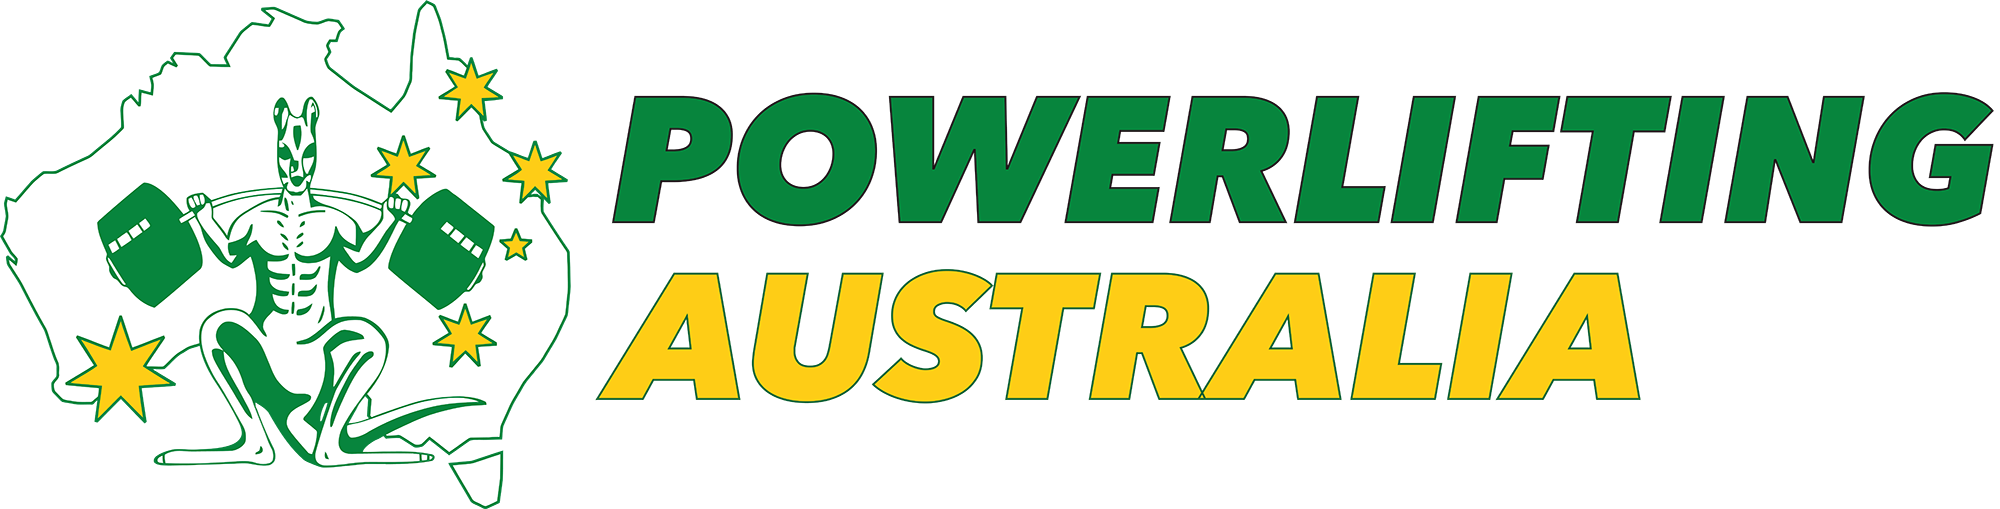 Powerlifting Australia